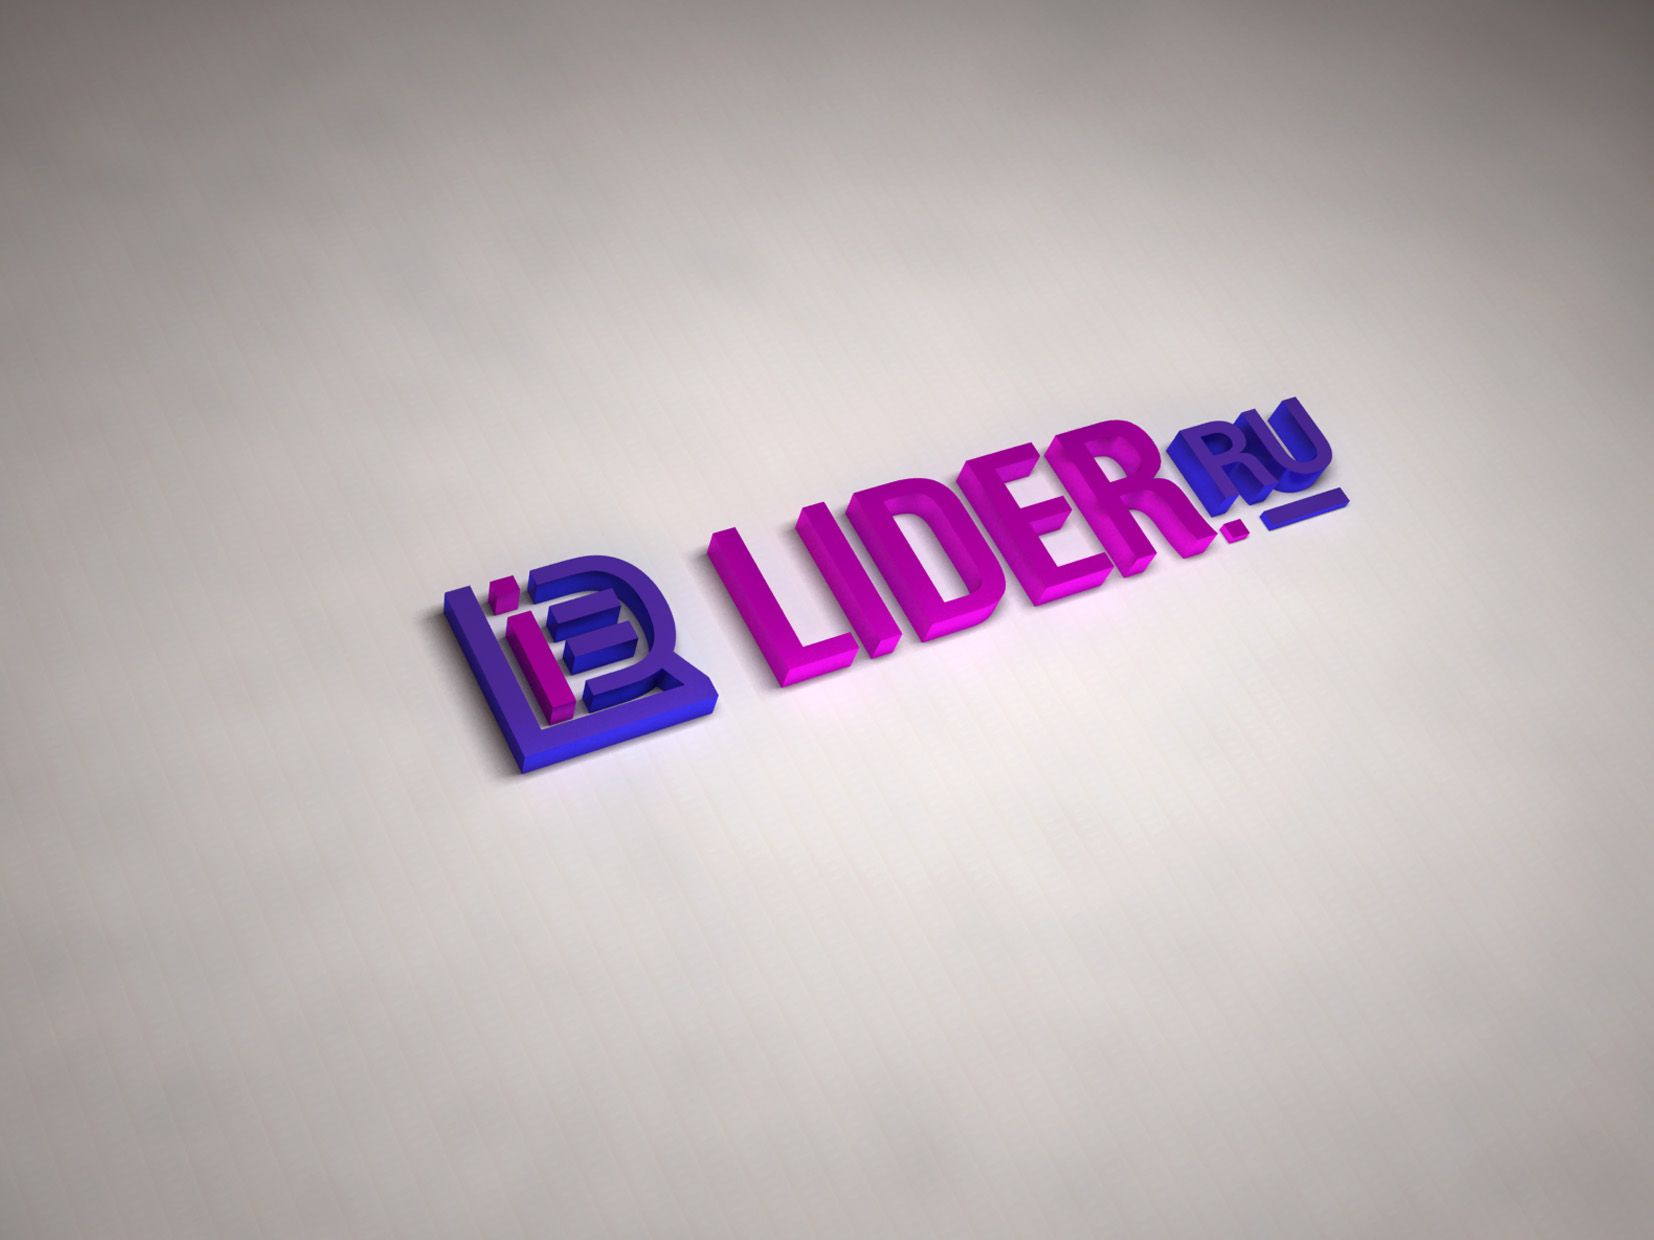 Логотип новостного бизнес сайта Lider.ru - дизайнер cloudlixo